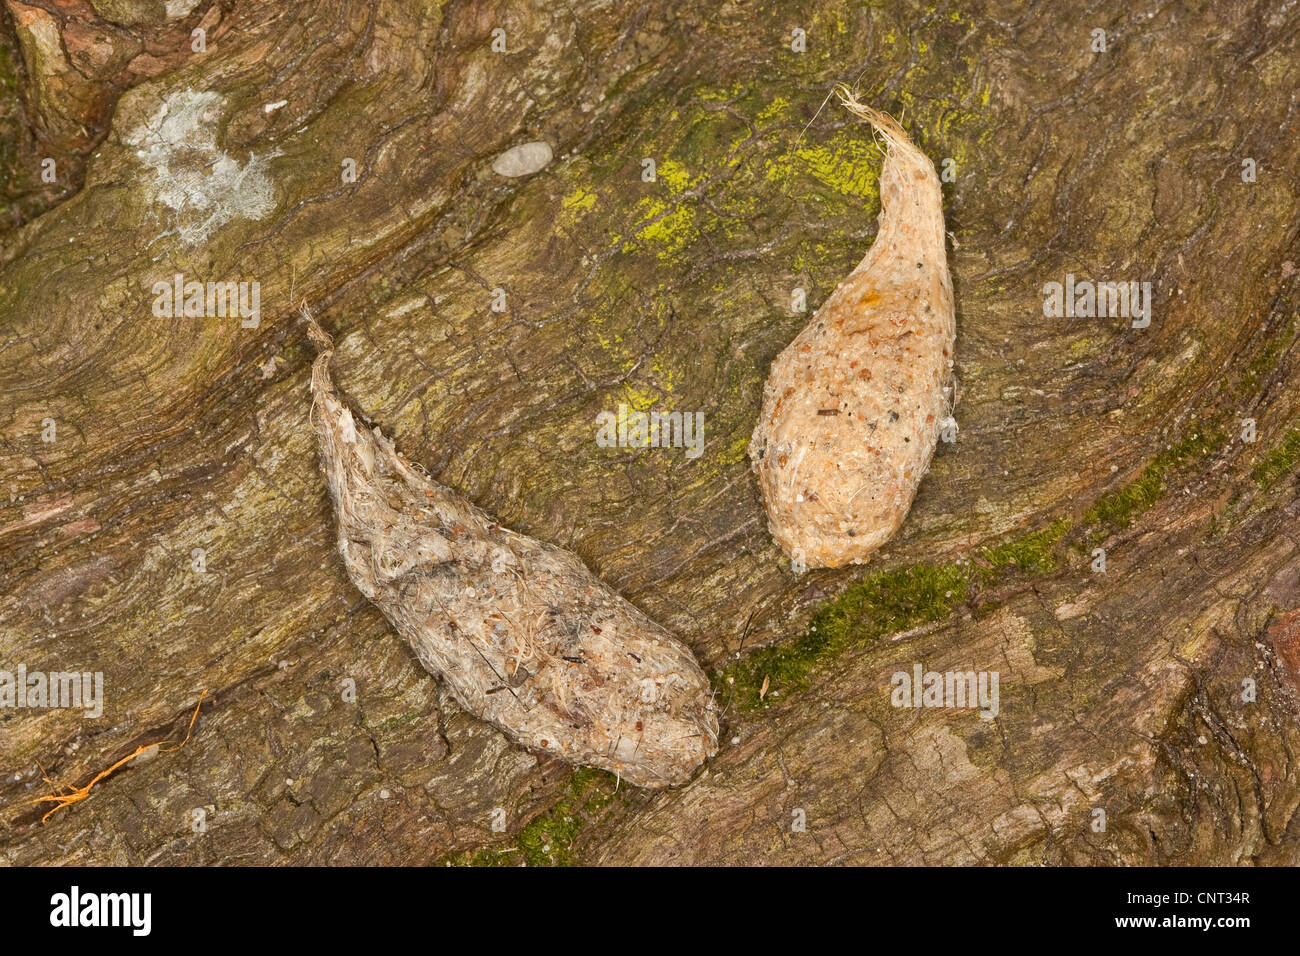 Comune di gheppio (Falco tinnunculus), il gufo agglomerati in forma di pellets di pelliccia e i peli, Germania Foto Stock